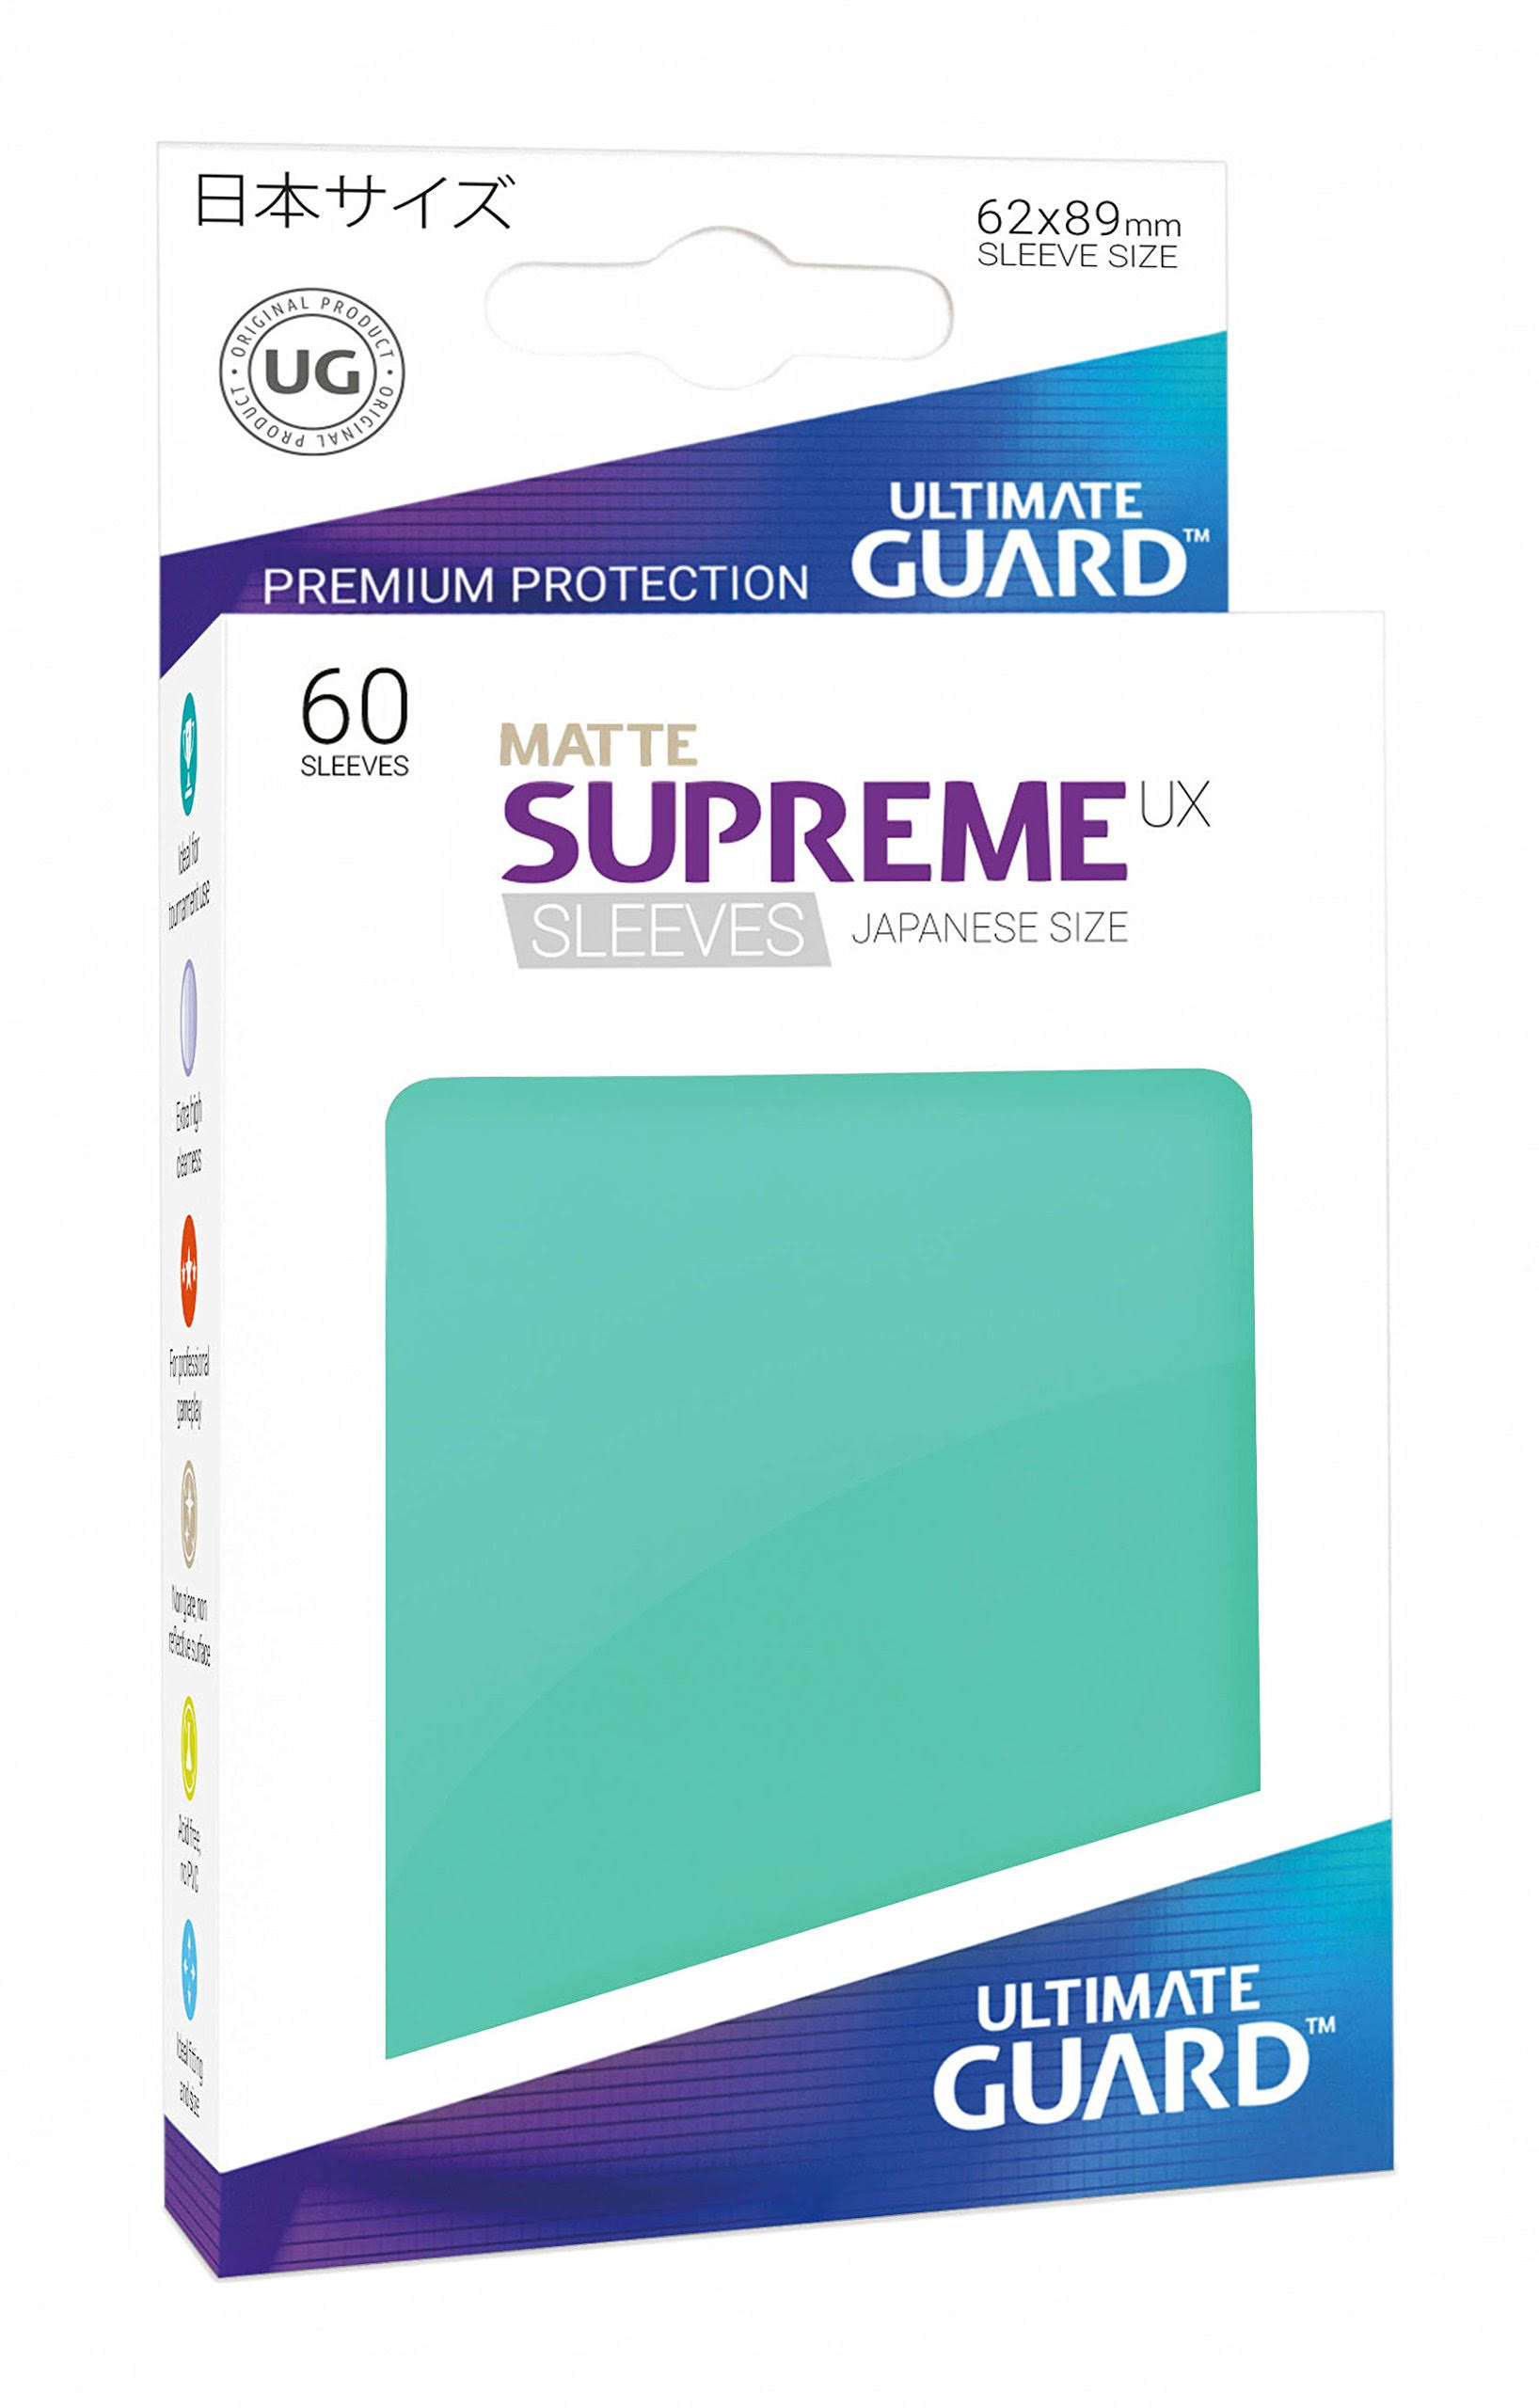 Ultimate Guard Supreme Ux Sleeves - 60 Sleeves